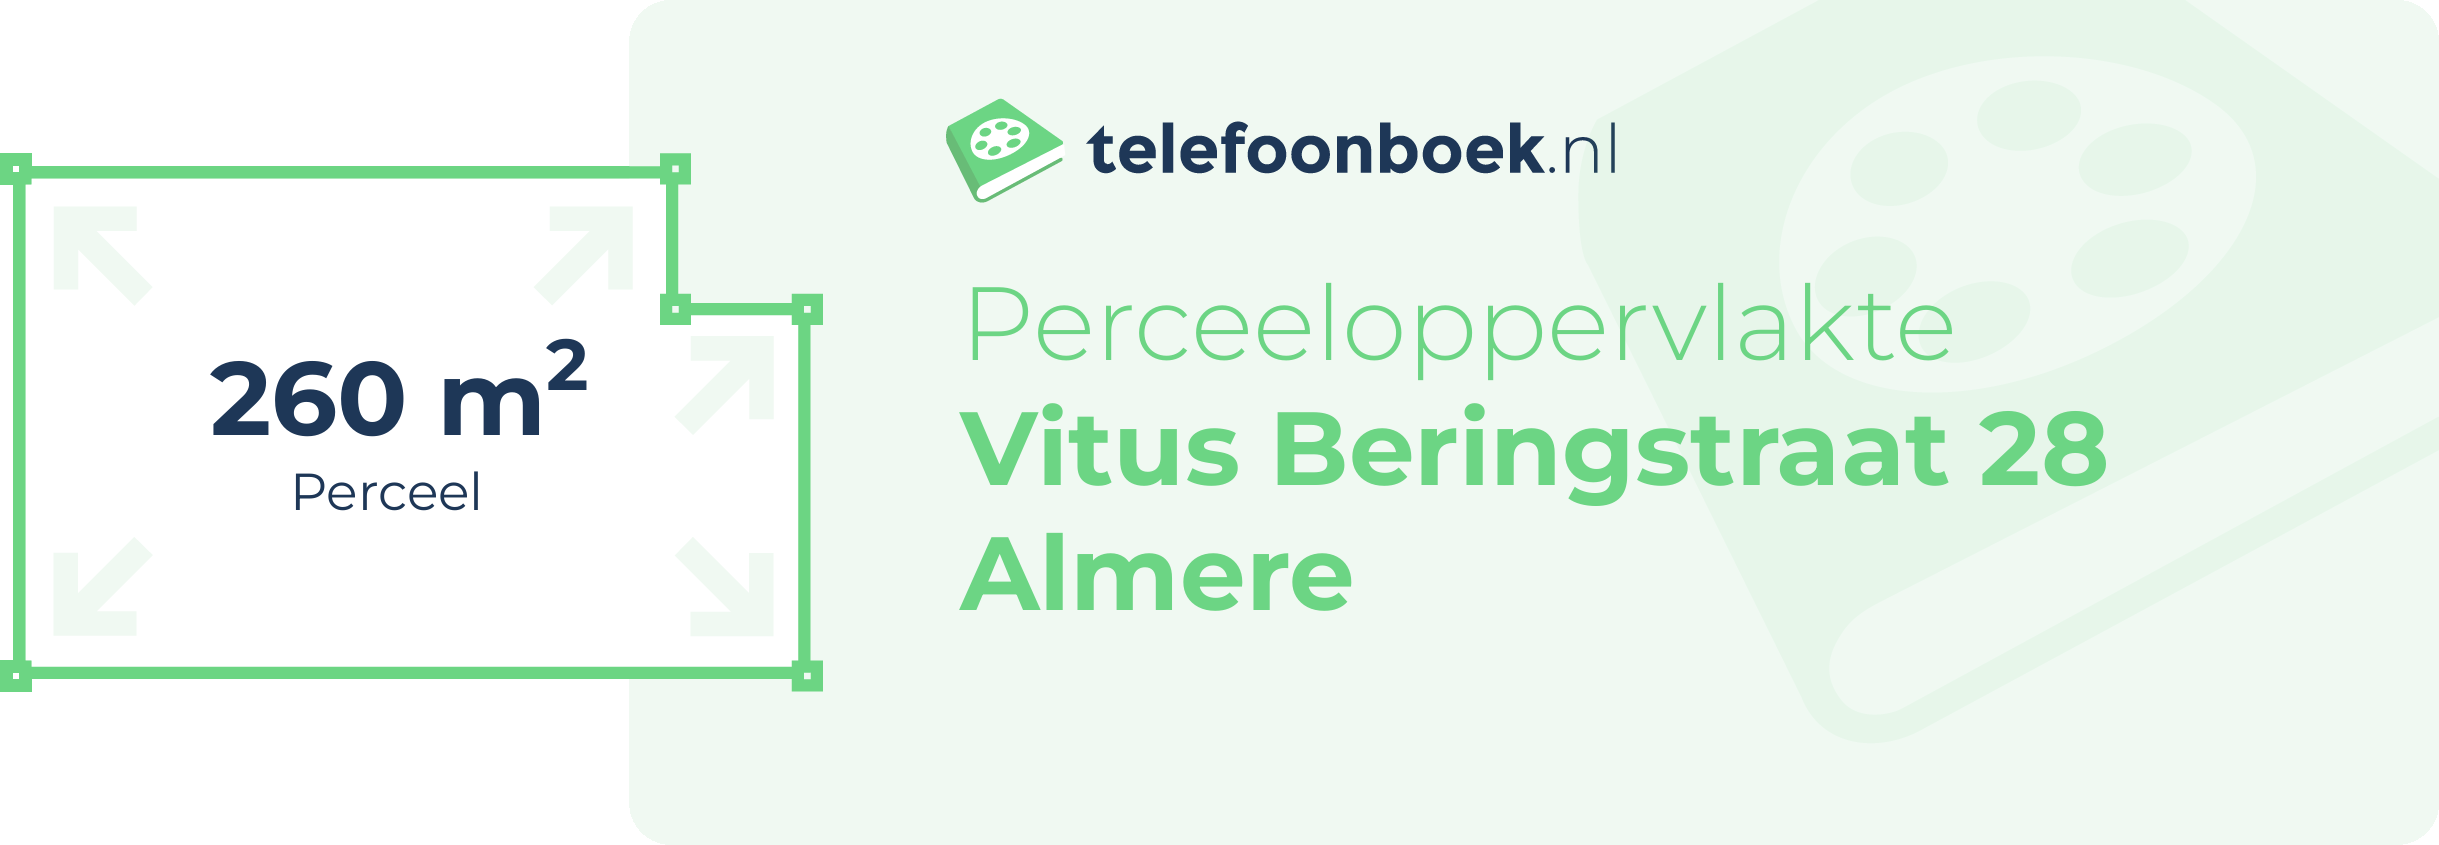 Perceeloppervlakte Vitus Beringstraat 28 Almere